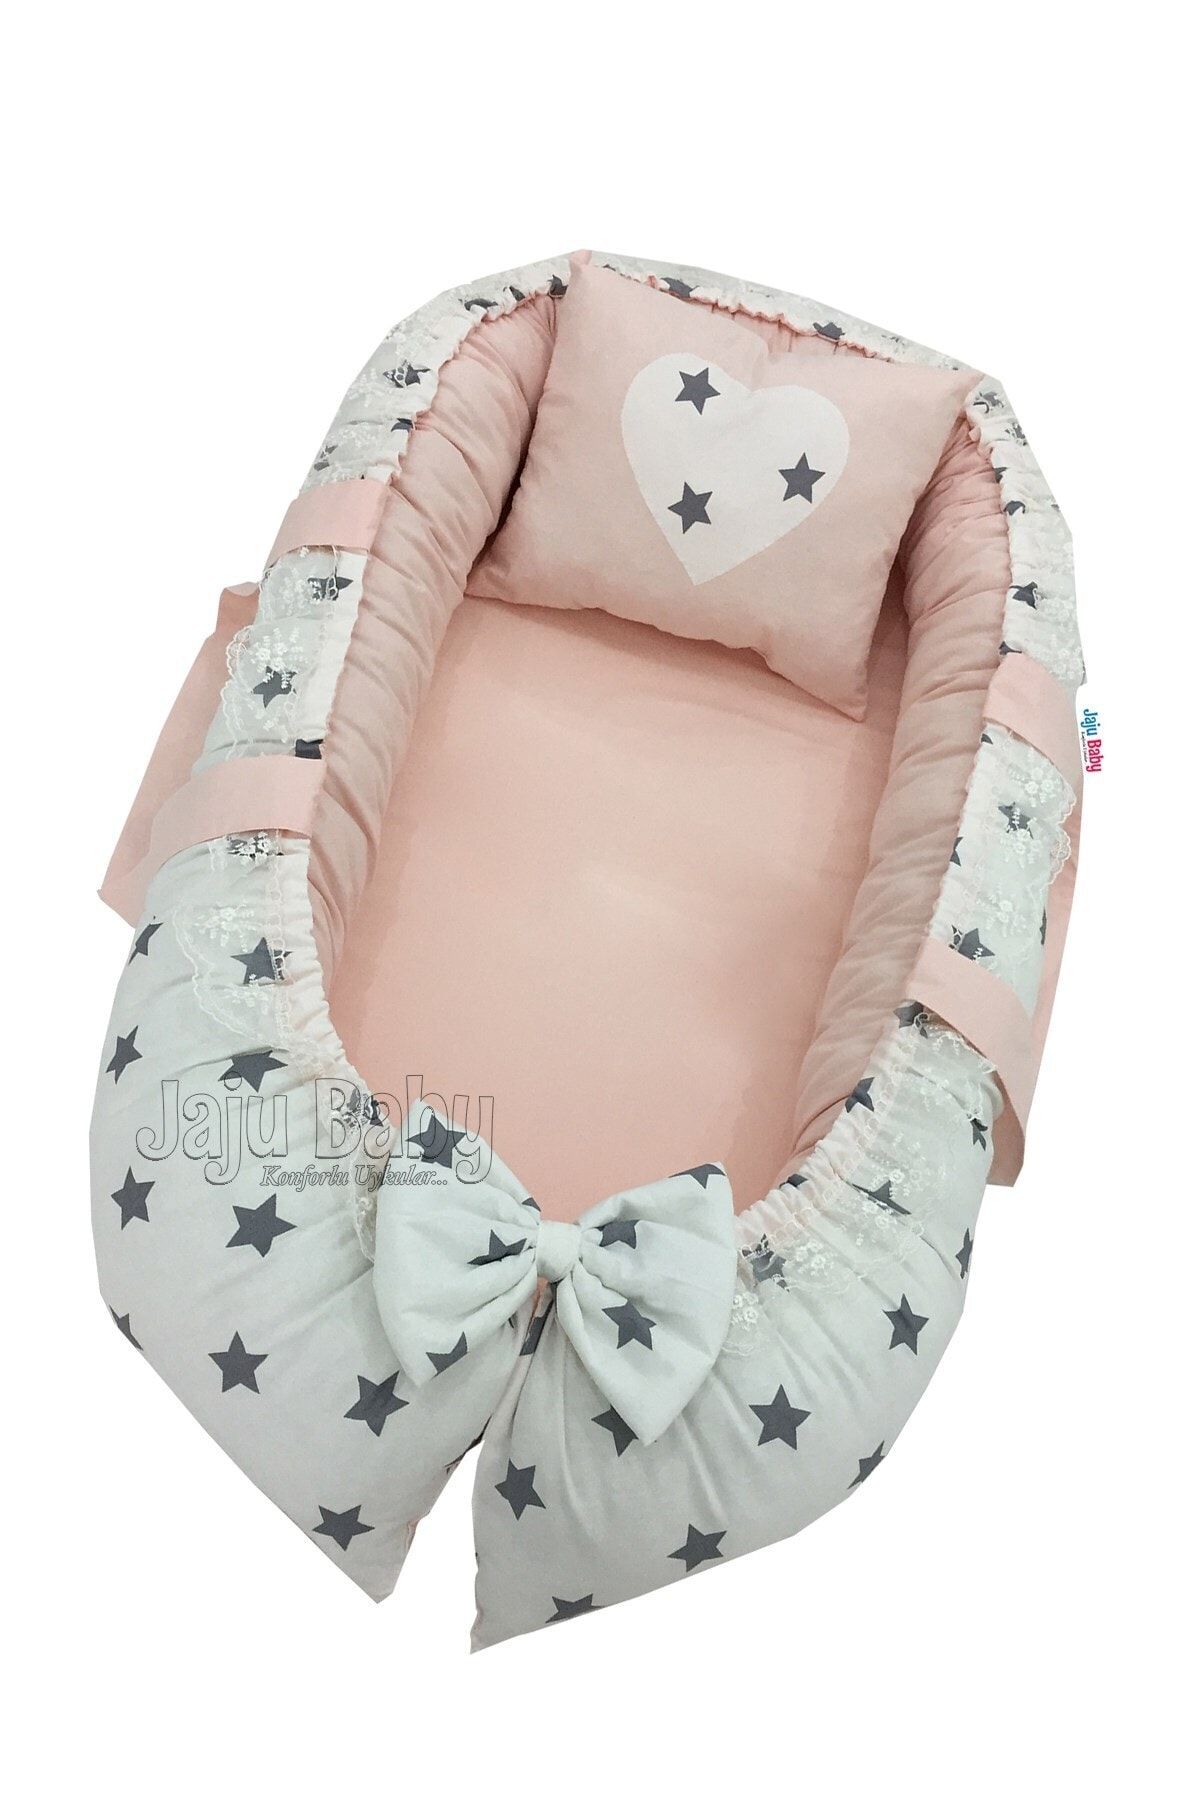 Jaju Baby Nest Beyaz Zemin Gri Yıldız Lüx Jaju-babynest Anne Yanı Bebek Yatağı